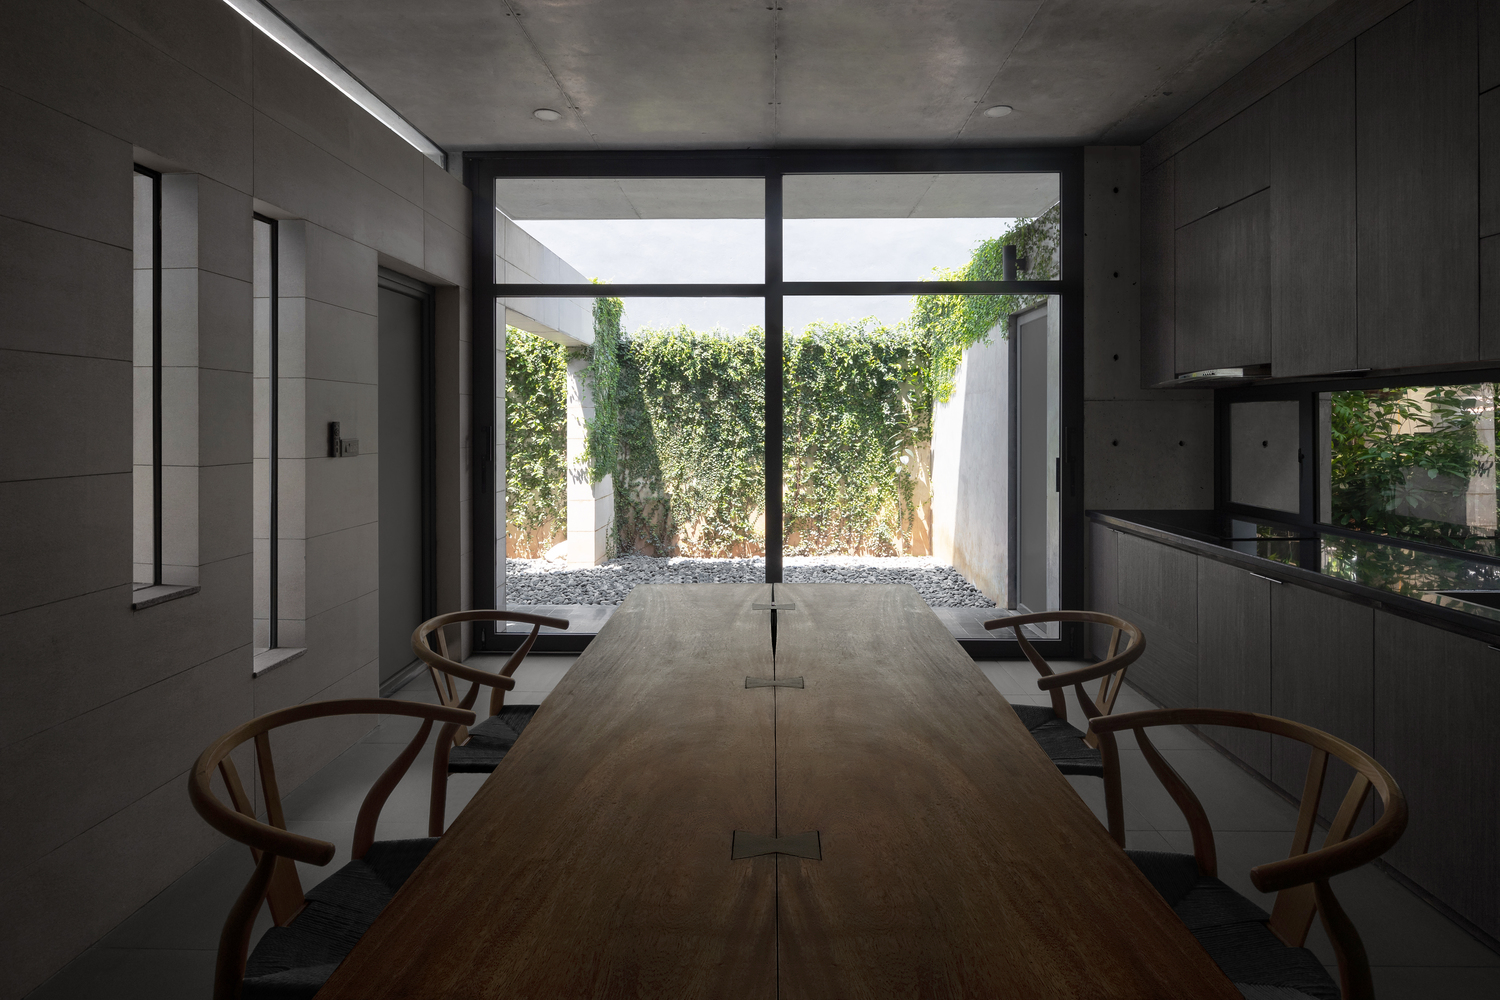 hình ảnh phòng bếp ăn với bàn ghế gỗ mộc mạc, cửa kính lớn mở ra sân vườn